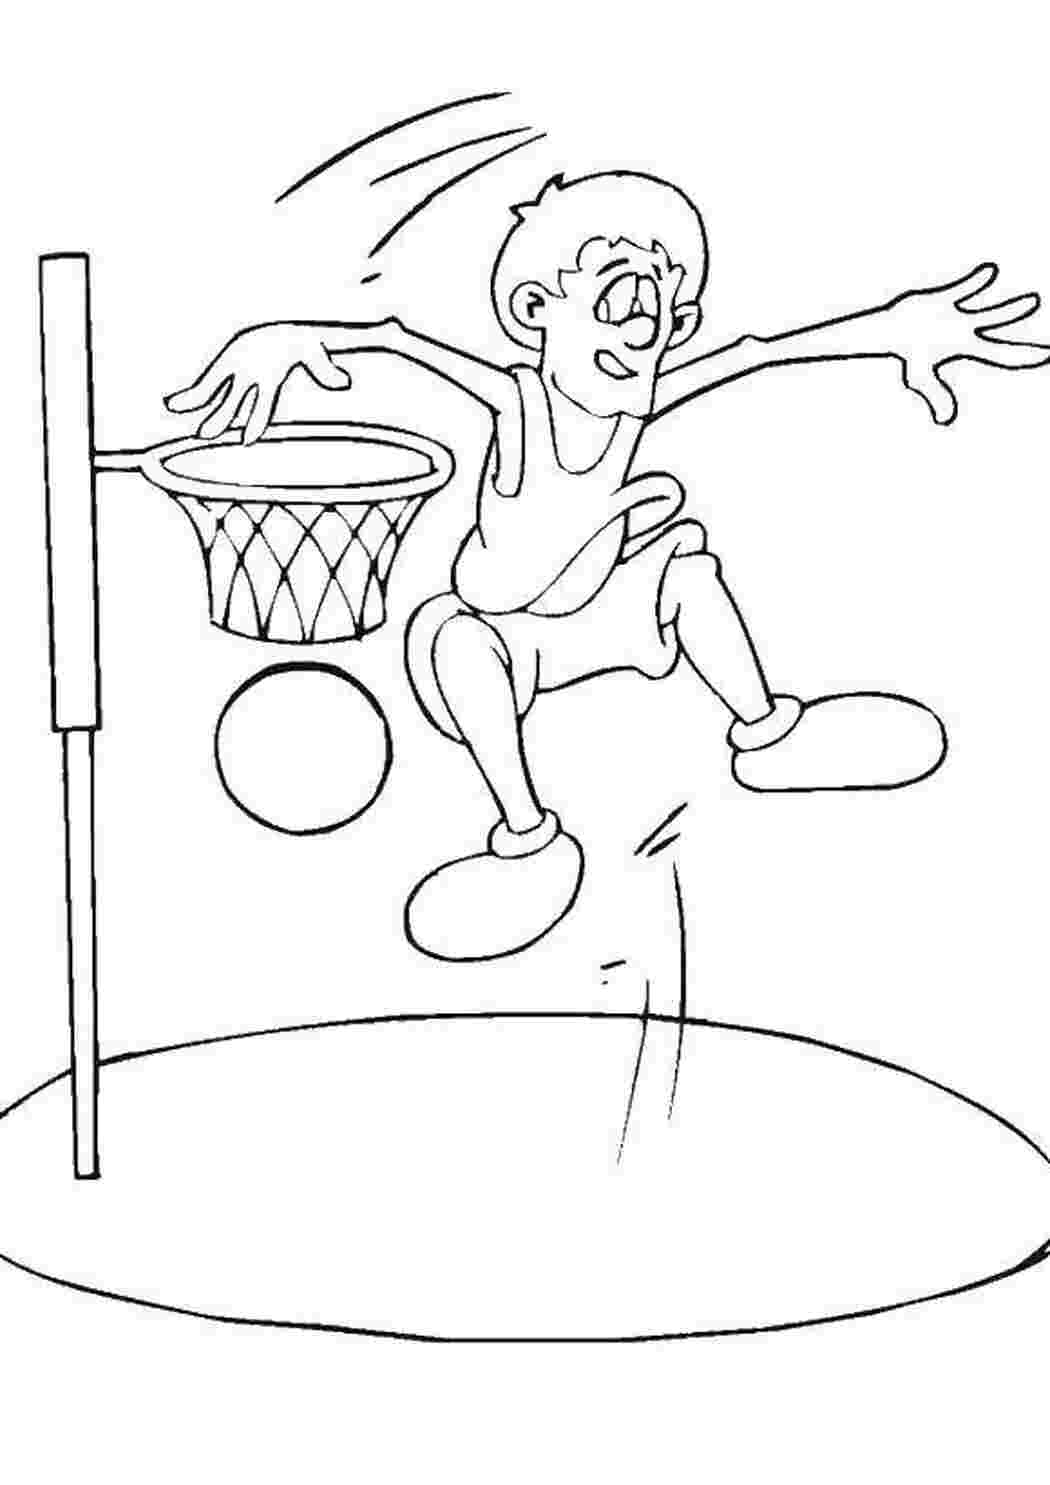 Раскраска для детей виды спорта баскетбол